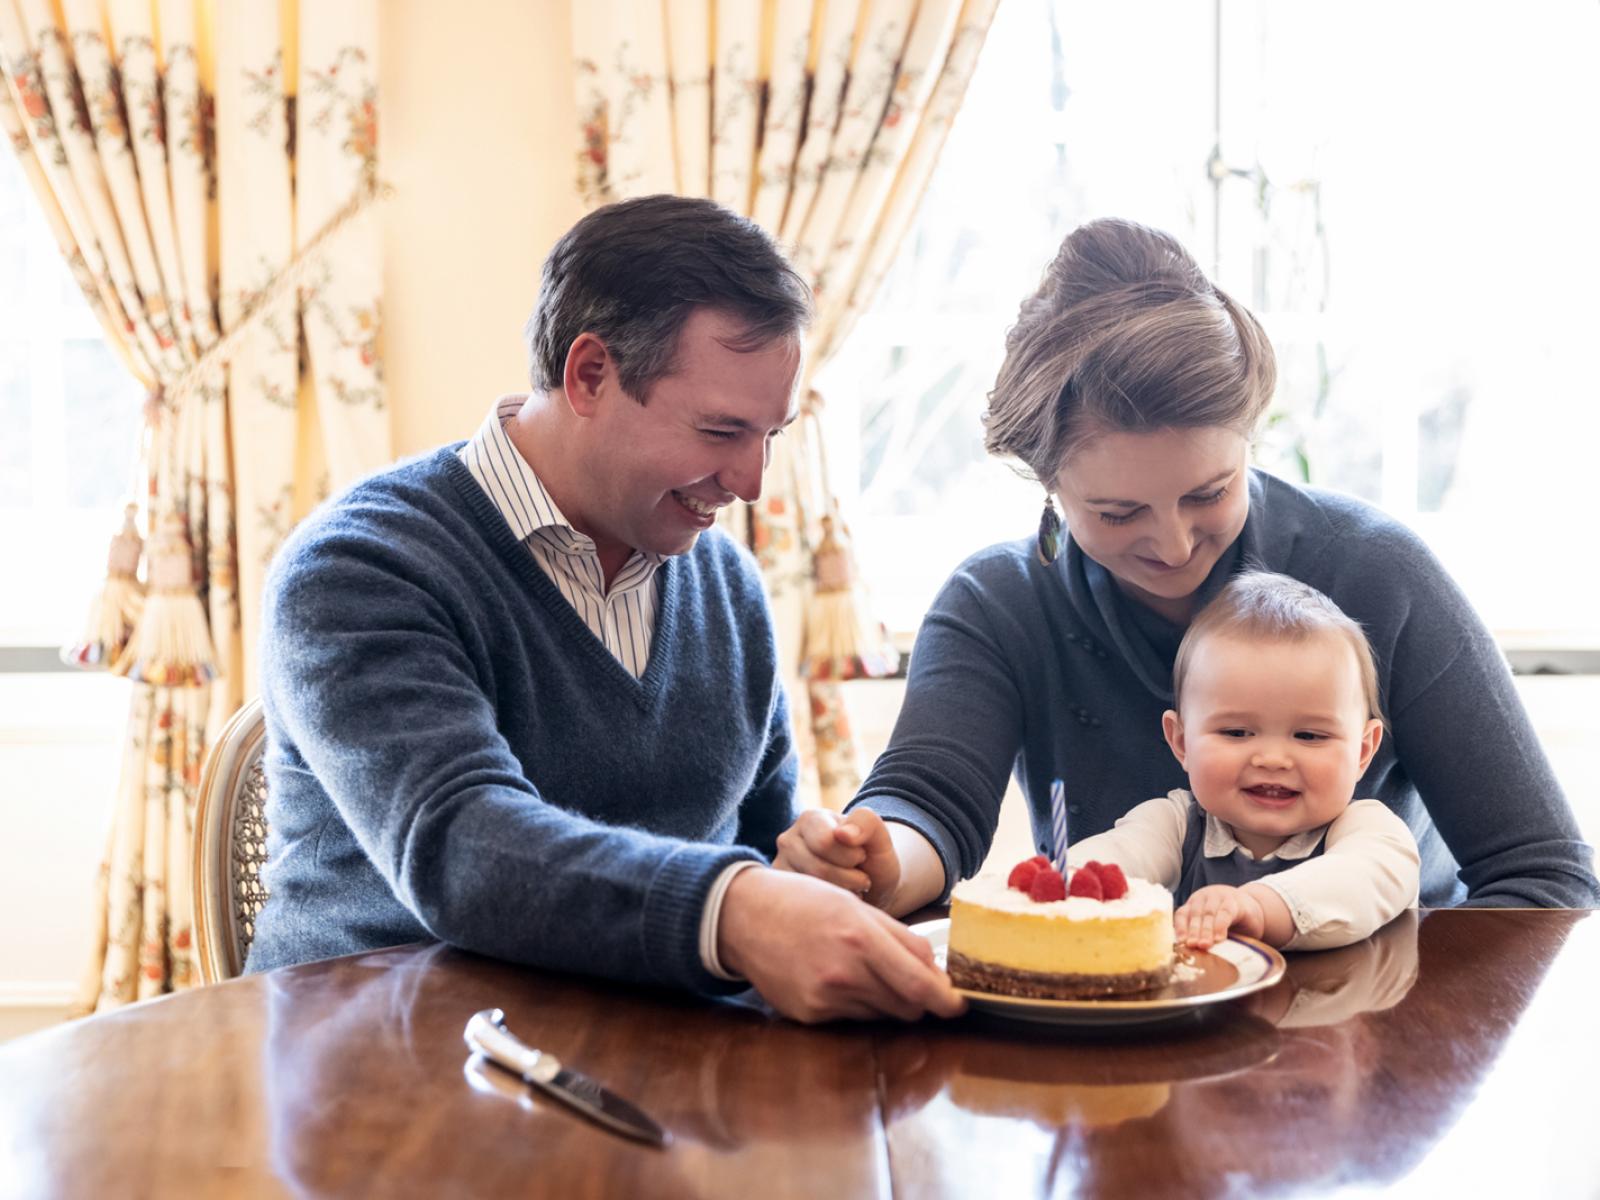 Le Prince Charles, entouré de ses parents, découpe son premier gâteau anniversaire